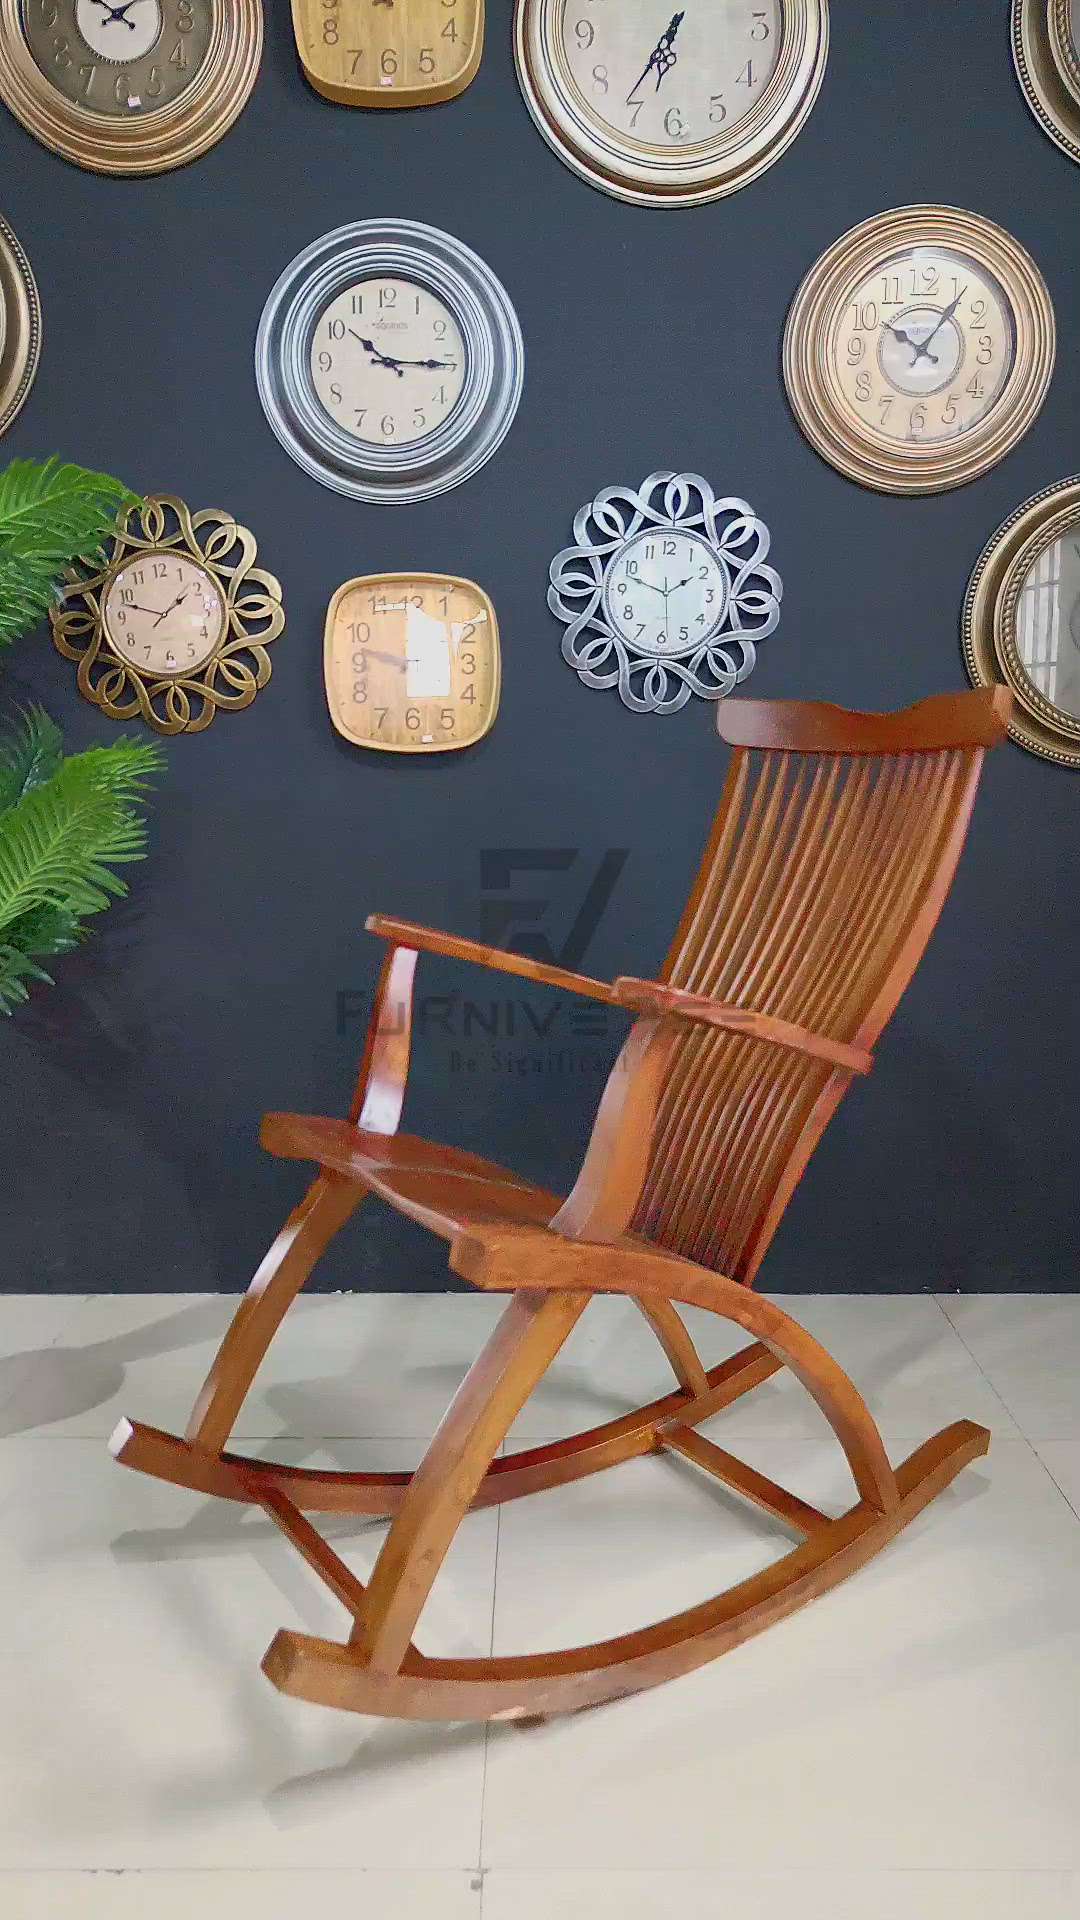 Rocking chair @ Furniverse palakkad.... #furnitures  #rockingchair  #easychair  #HomeDecor  #chair  #Palakkad  #Carpenter  #relax  #Designs  #woodendesign  #Teak  #teakwood